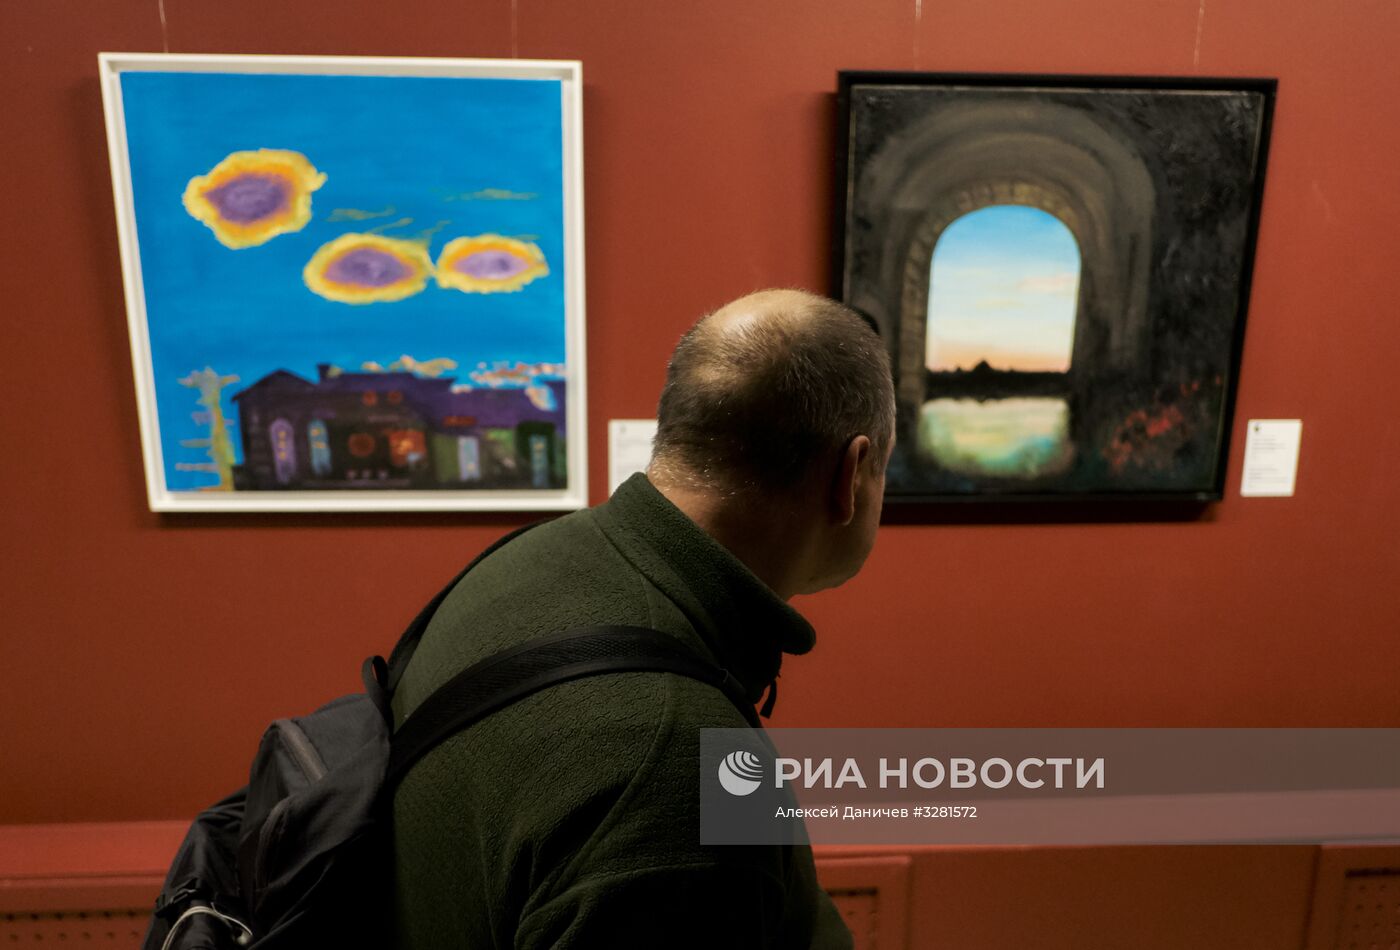 Открытие выставки "Азбука Лунного Света" Бориса Гребенщикова в Санкт-Петербурге